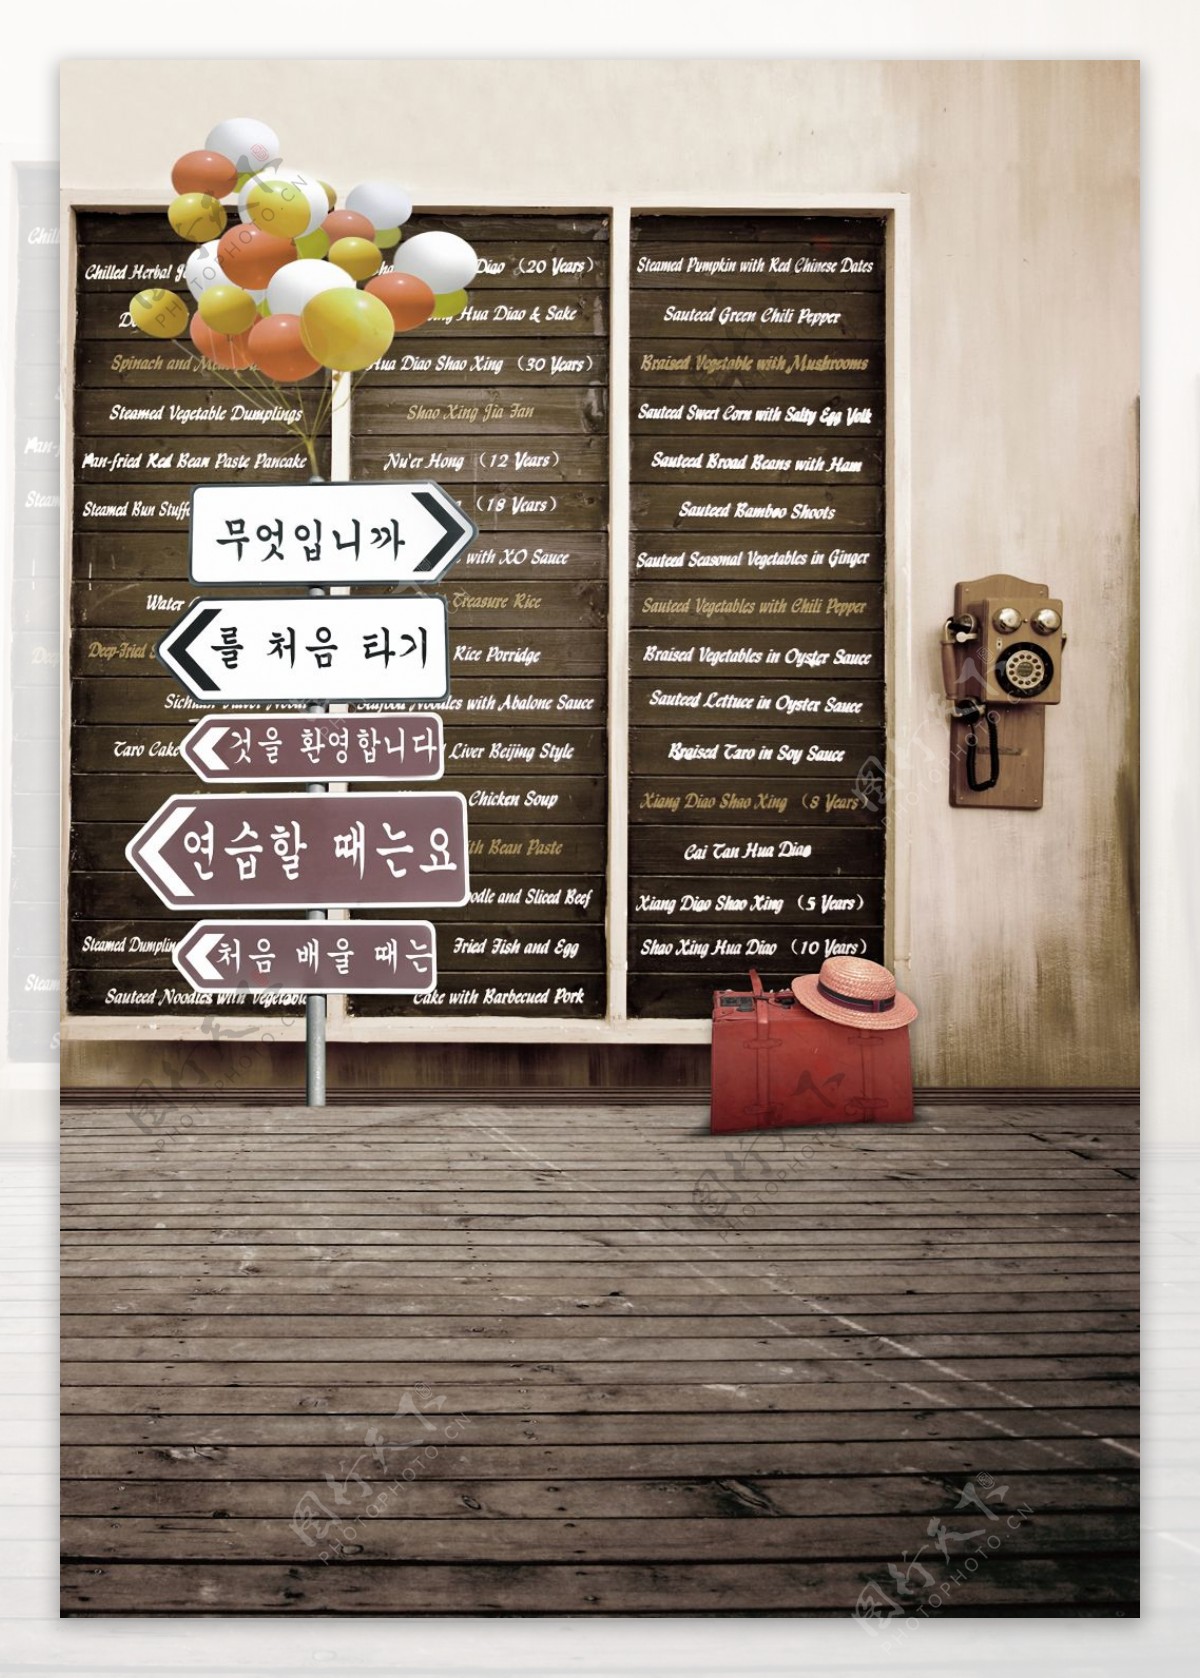 韩语导航投影背景高清图片素材